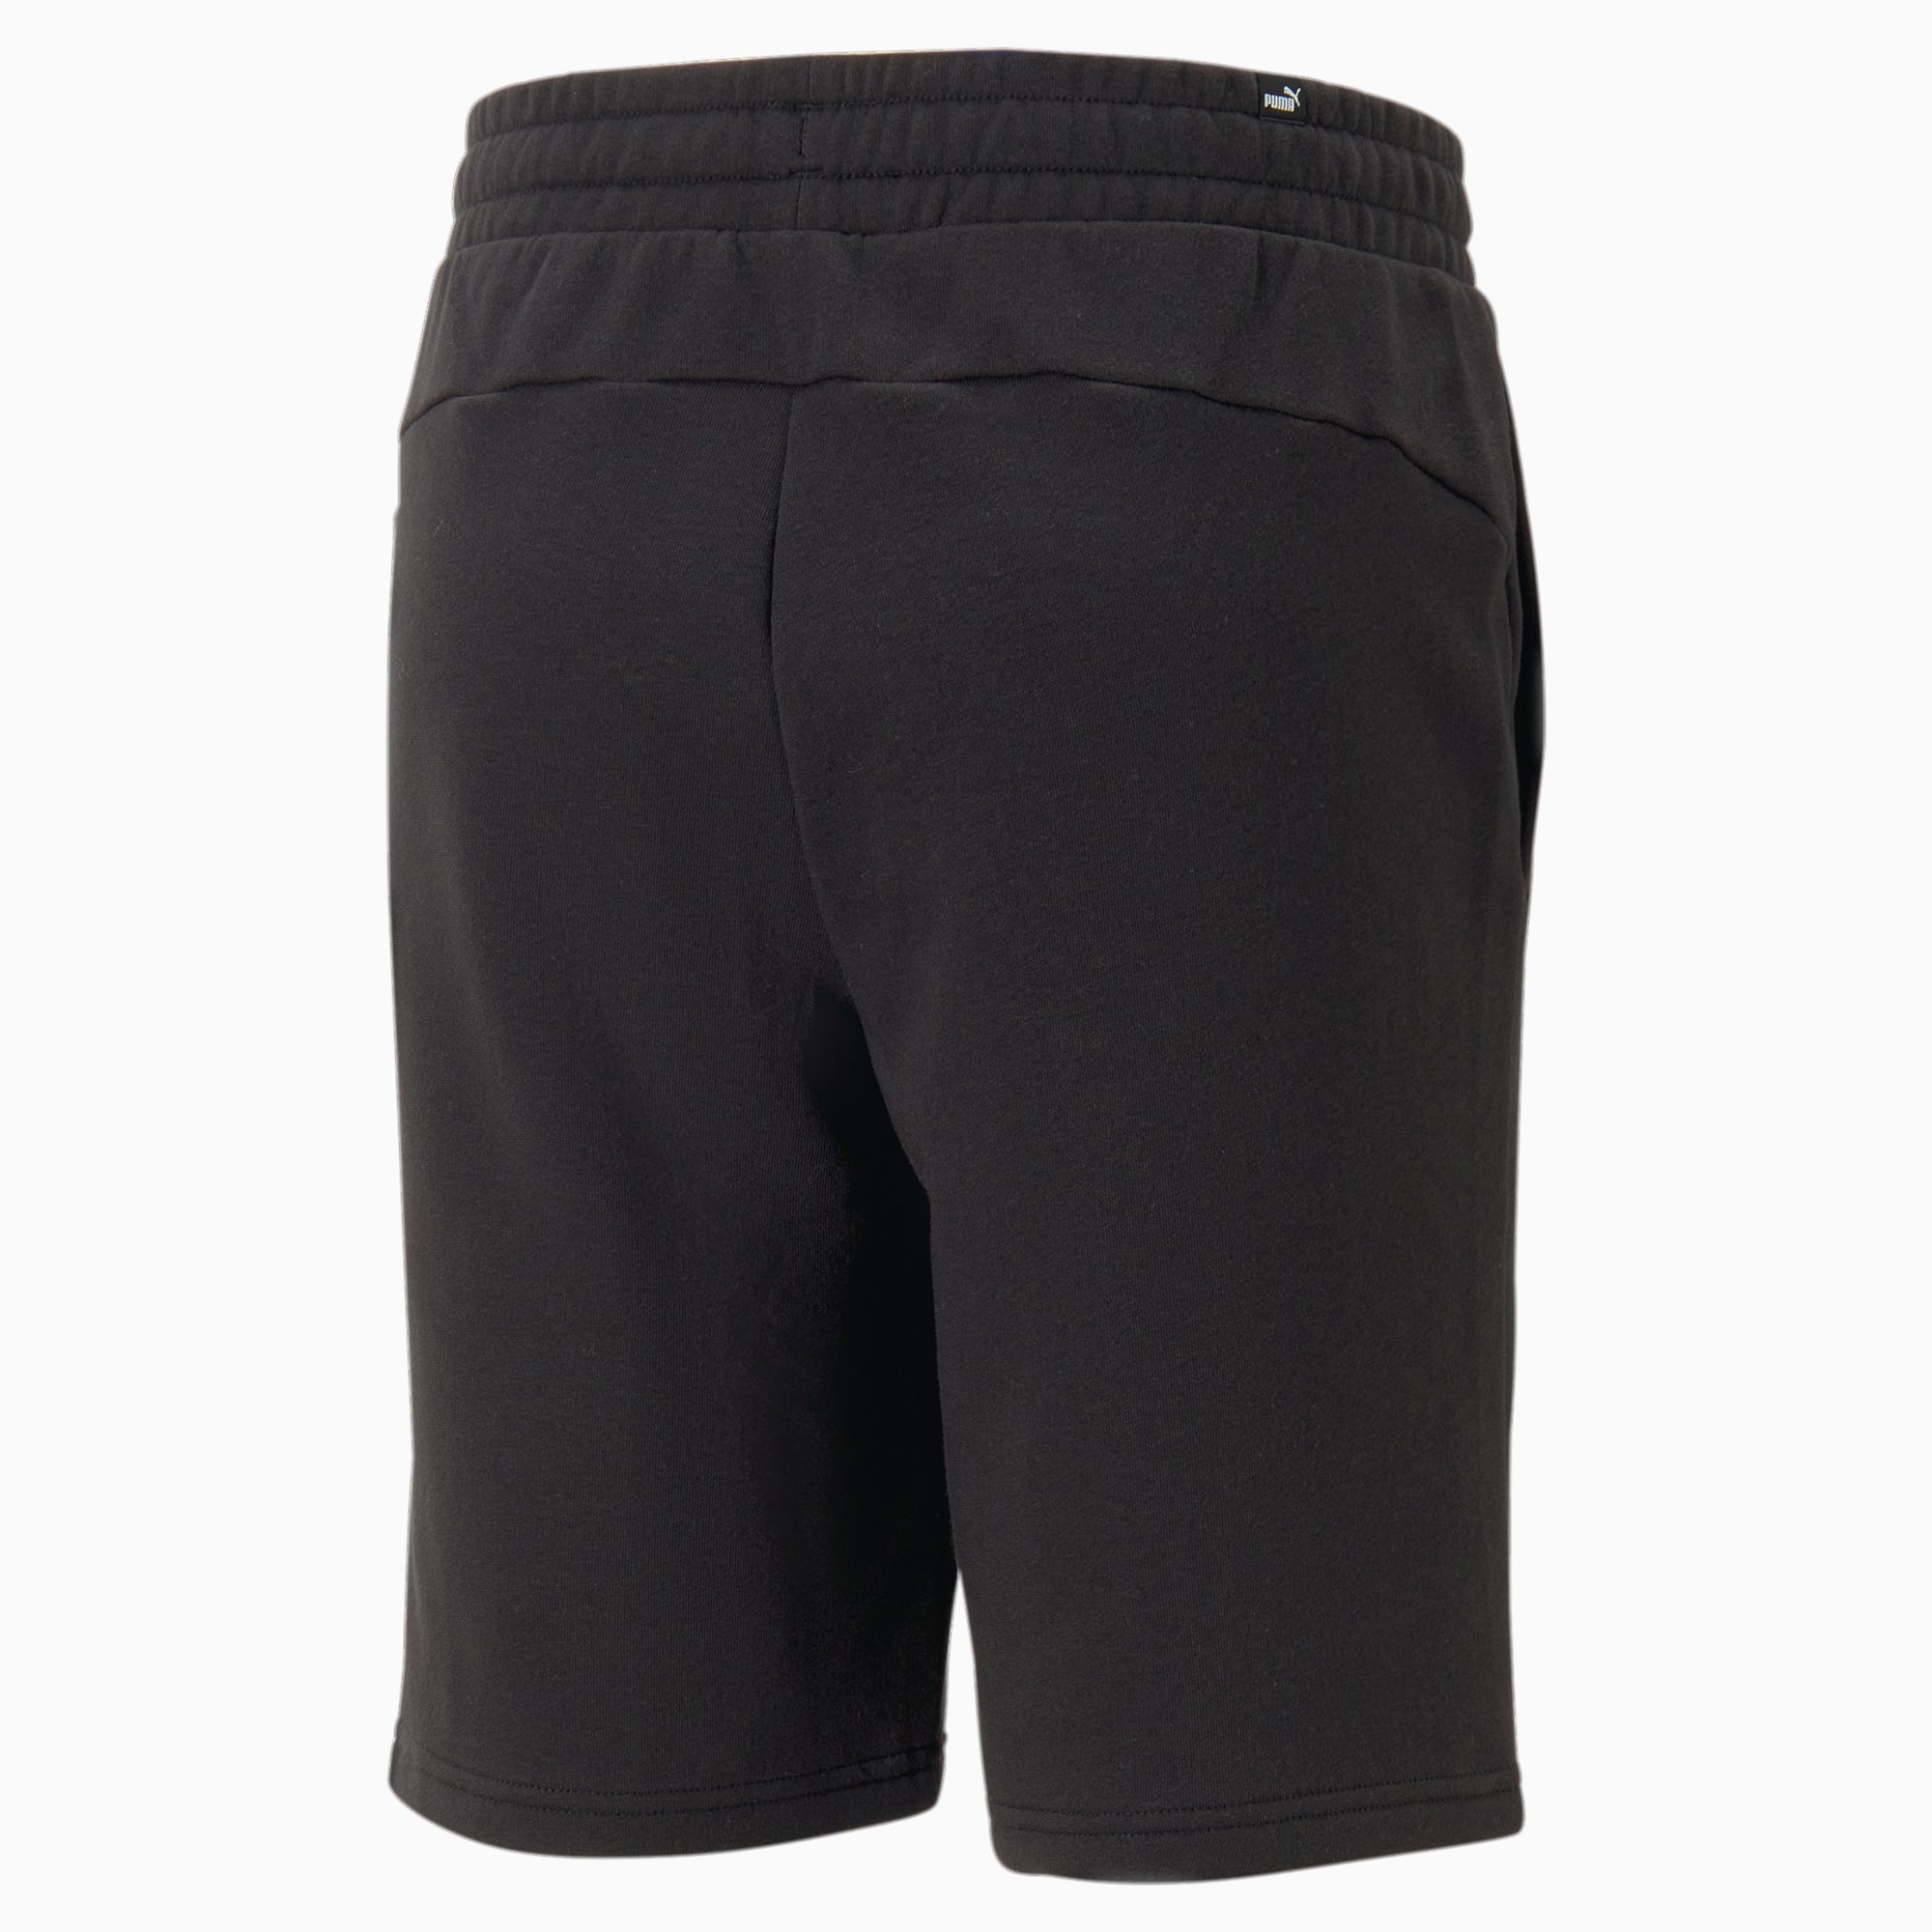 PUMA Block 9 Ft Shorts Men, Black/White, Size L, Clothing